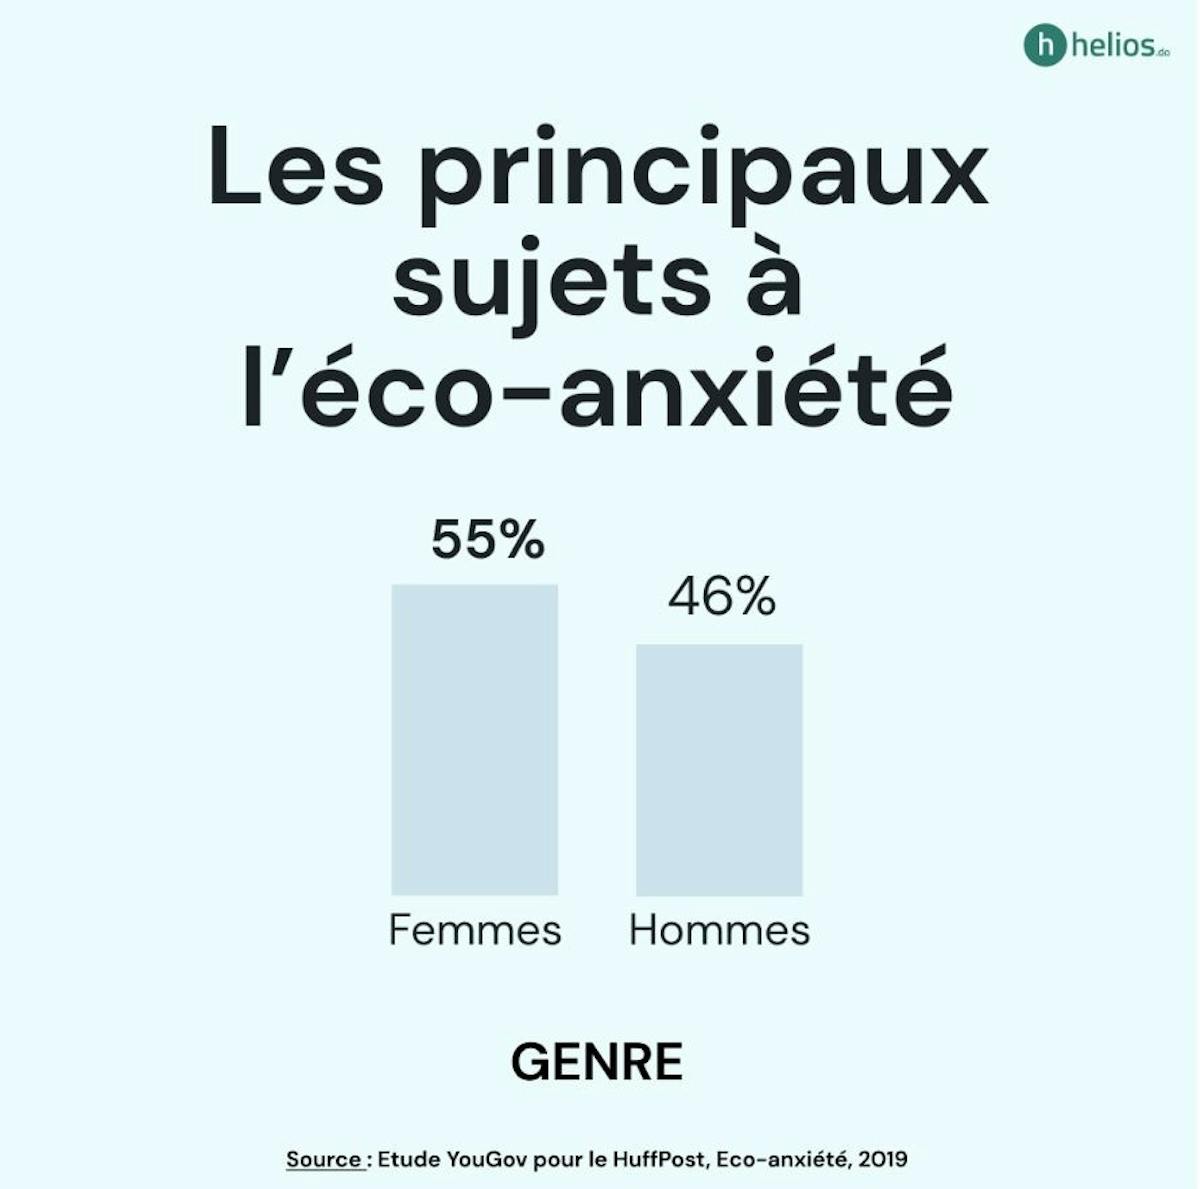 Les principaux sujets à l'éco-anxiété (selon le genre) sont les femmes